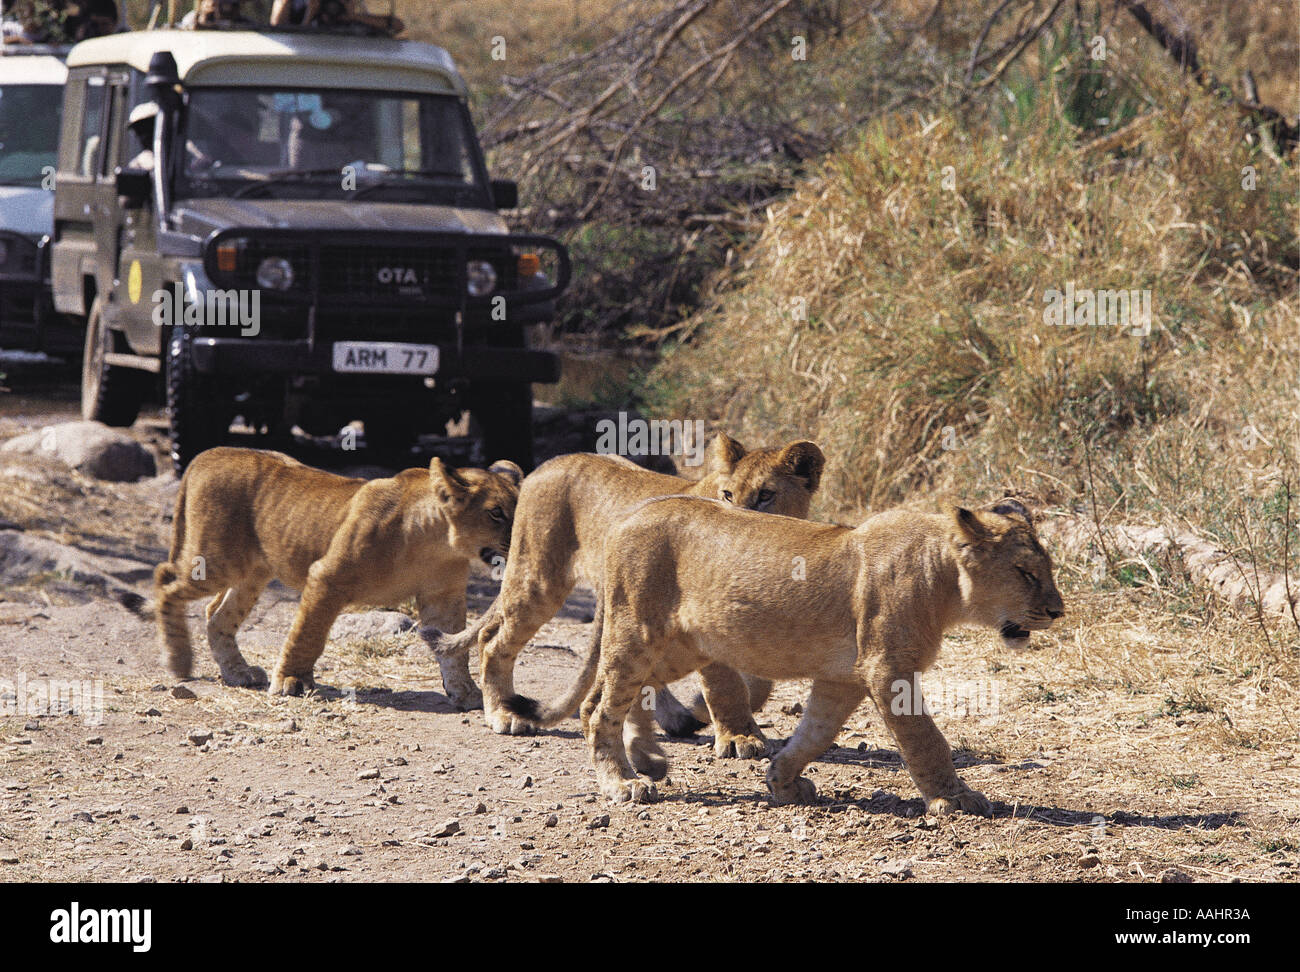 Lion cubs strada di attraversamento di fronte alla Toyota Landcruiser Serengeti National Park Tanzania Africa orientale Foto Stock